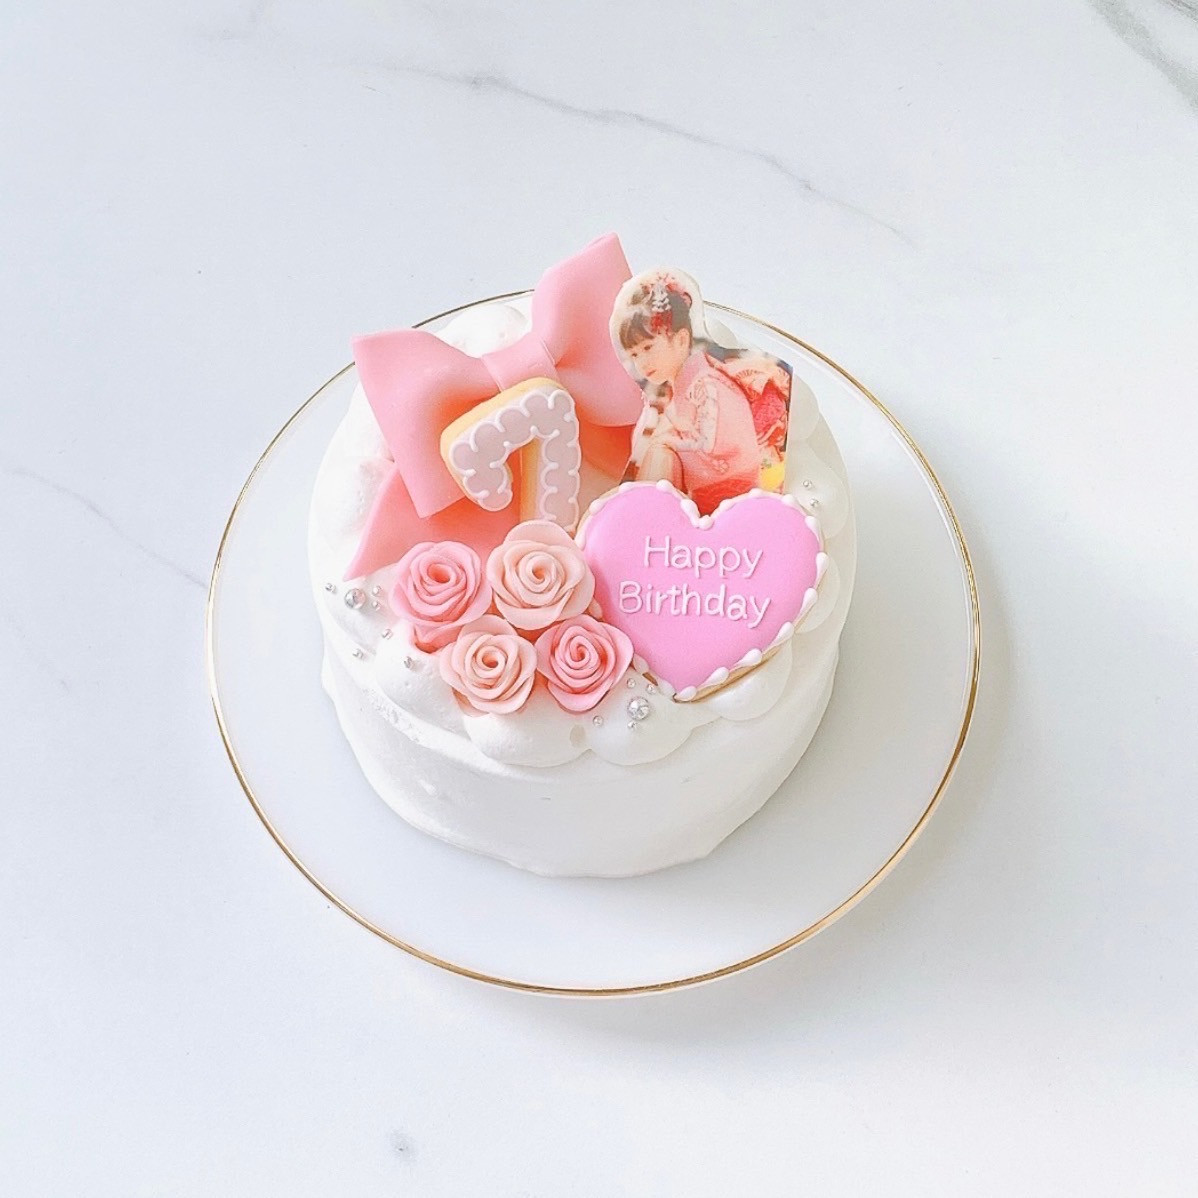 ■ ピンク風船12点セット 誕生日 パーティー センイル バースデーバルーン